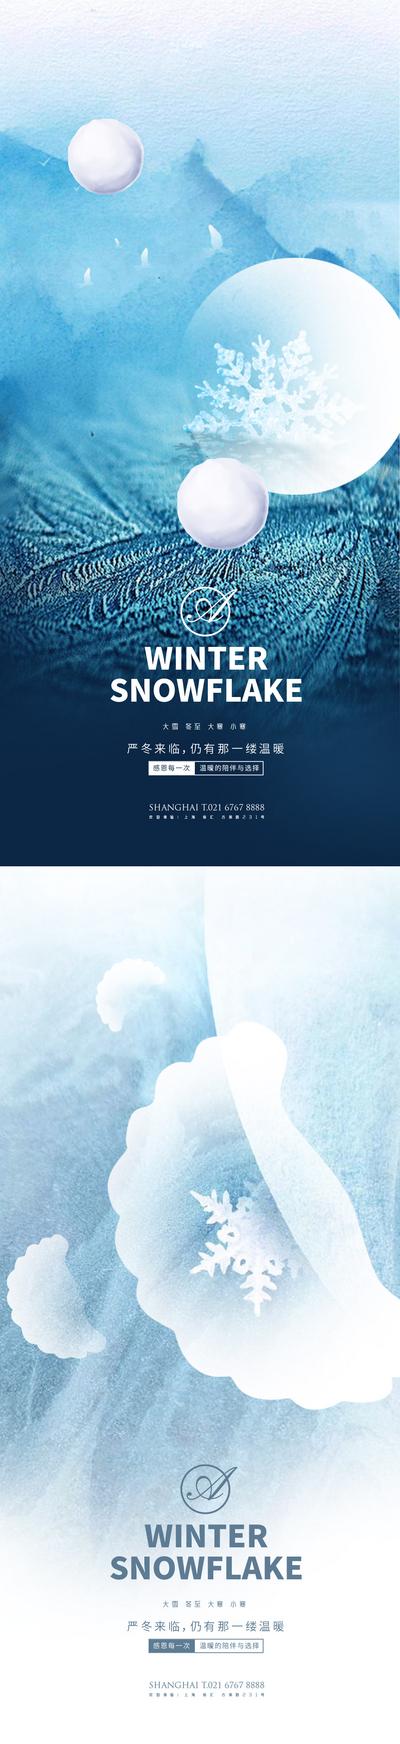 南门网 海报 二十四节气 系列 大雪 冬至 大寒 小寒 饺子 